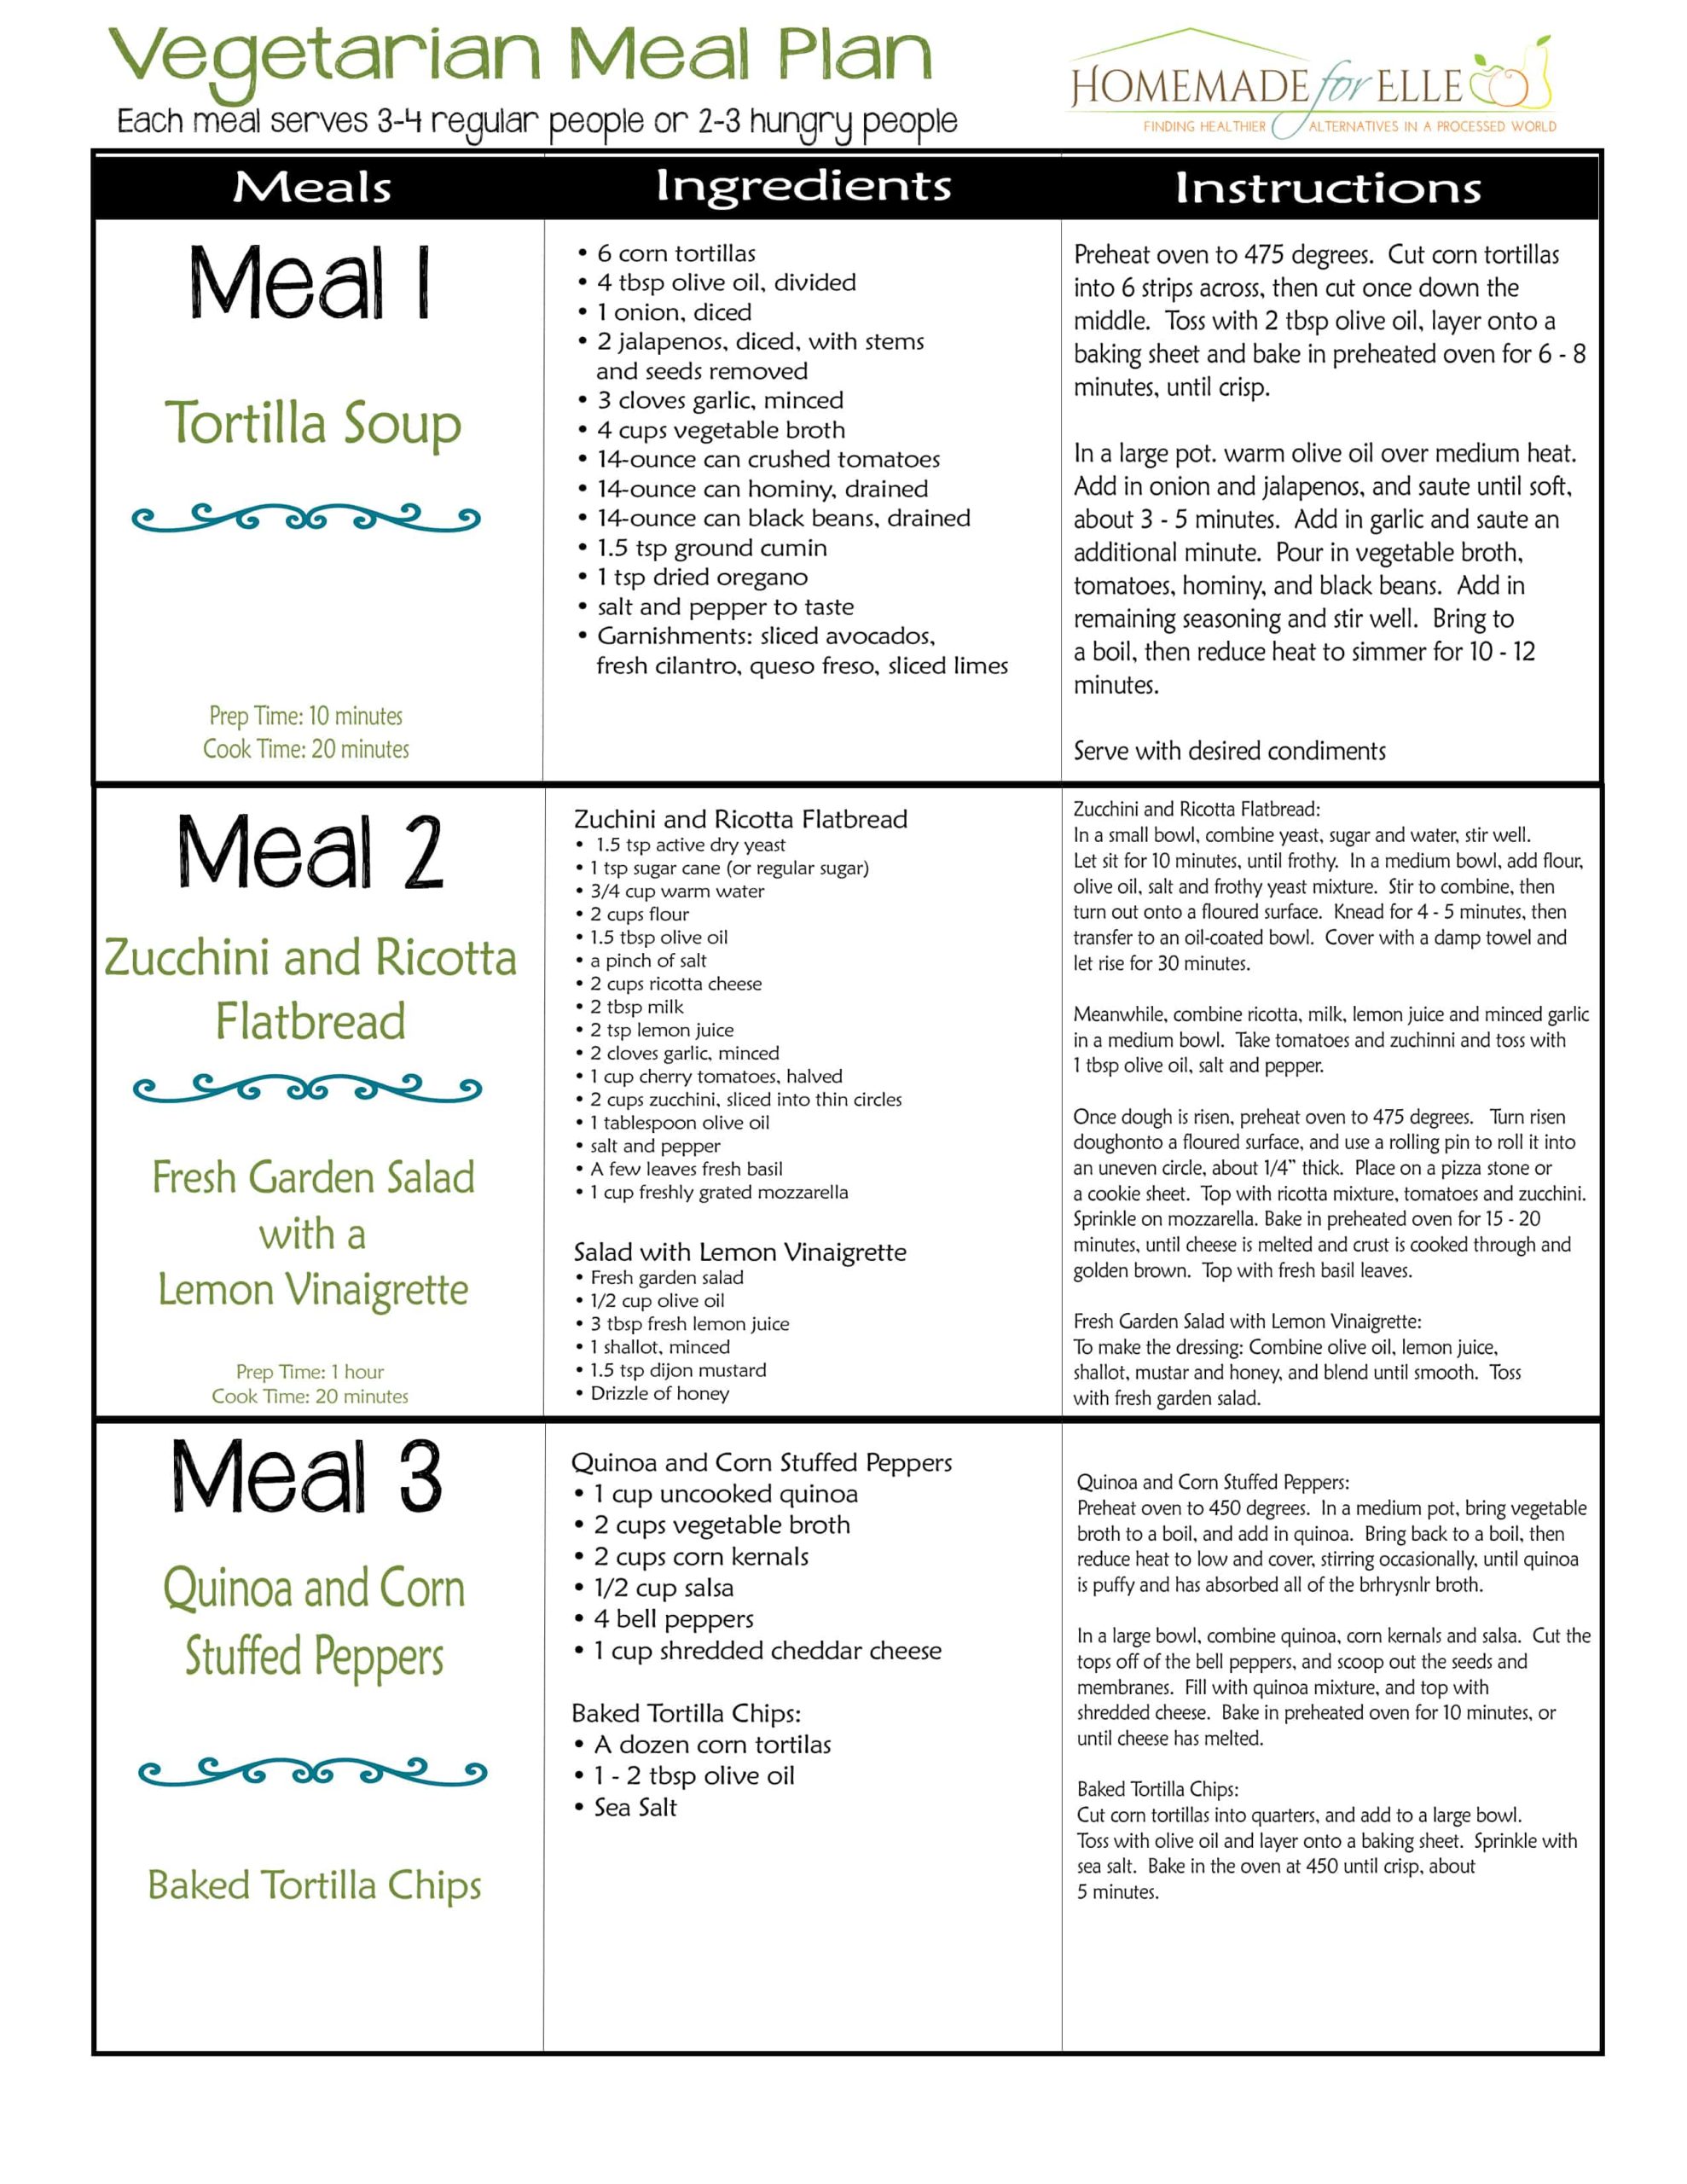 camping vegetarian meal planning sheet